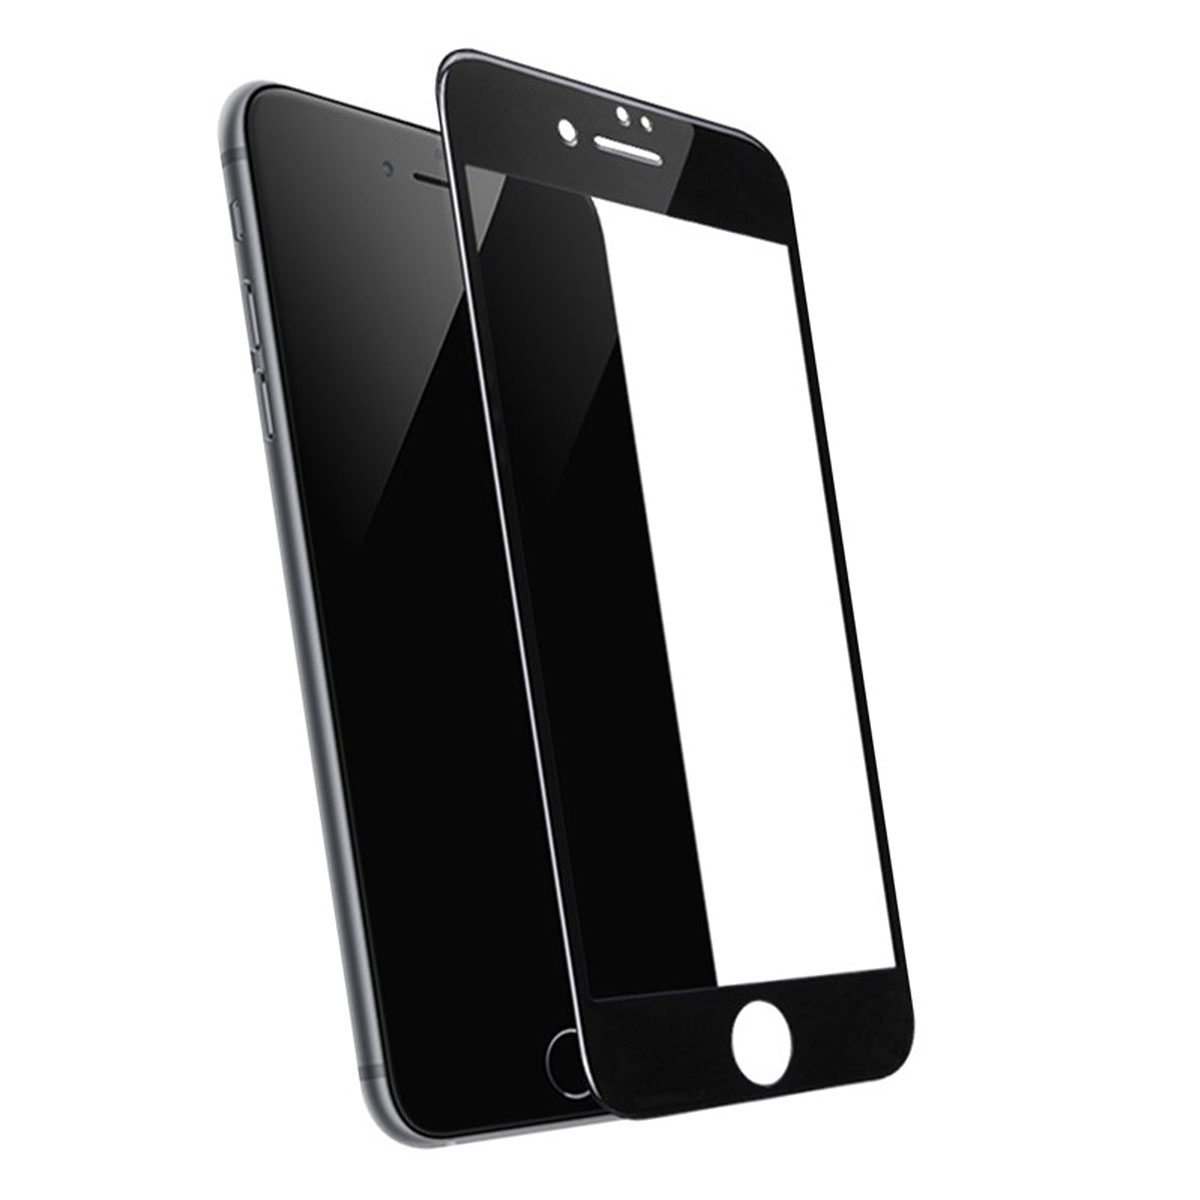 Защитное стекло HOCO G5 для APPLE iPhone 7, iPhone 8, iPhone SE 2020, цвет окантовки черный.